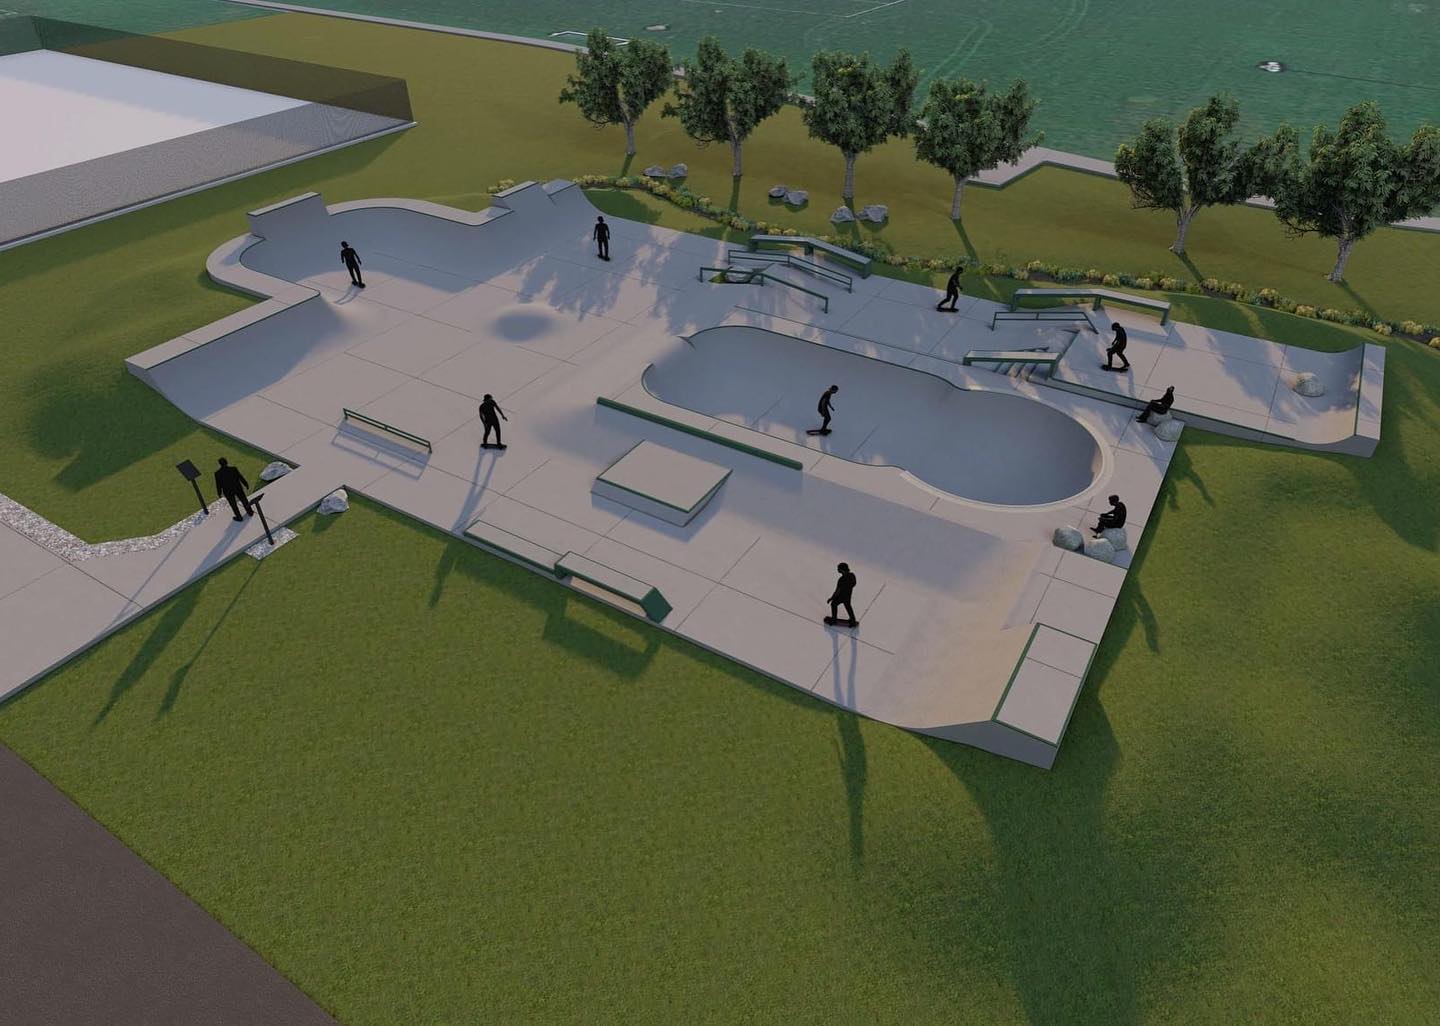 3-D rendition of skatepark